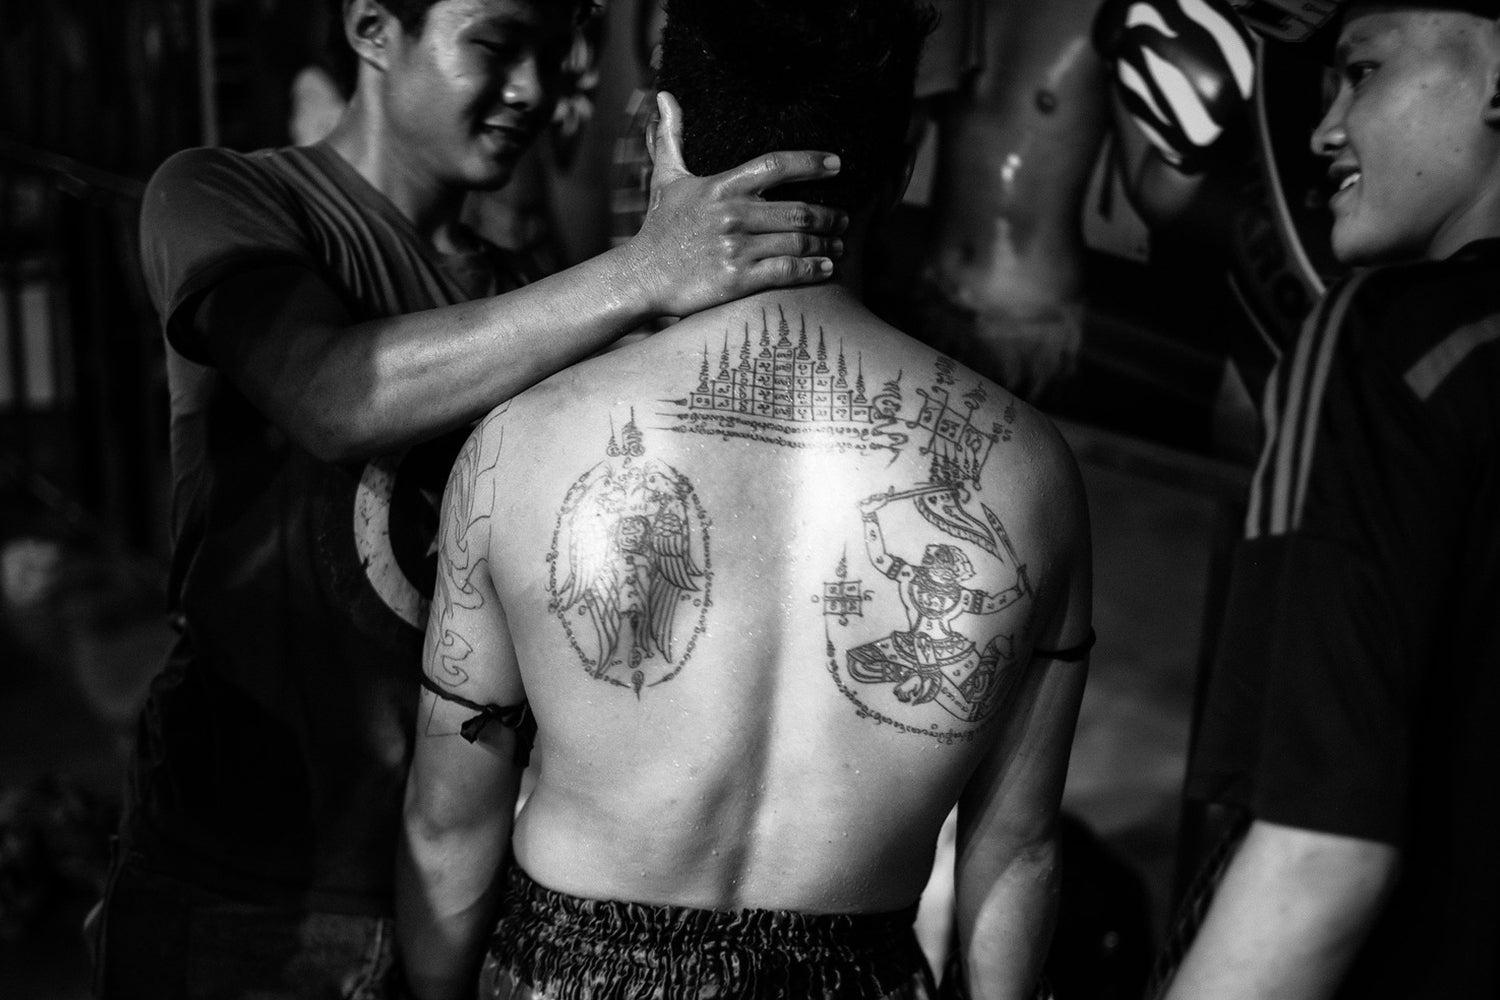 Apsara Tattoo | Tattoos with meaning, Tattoos, Tattoo designs